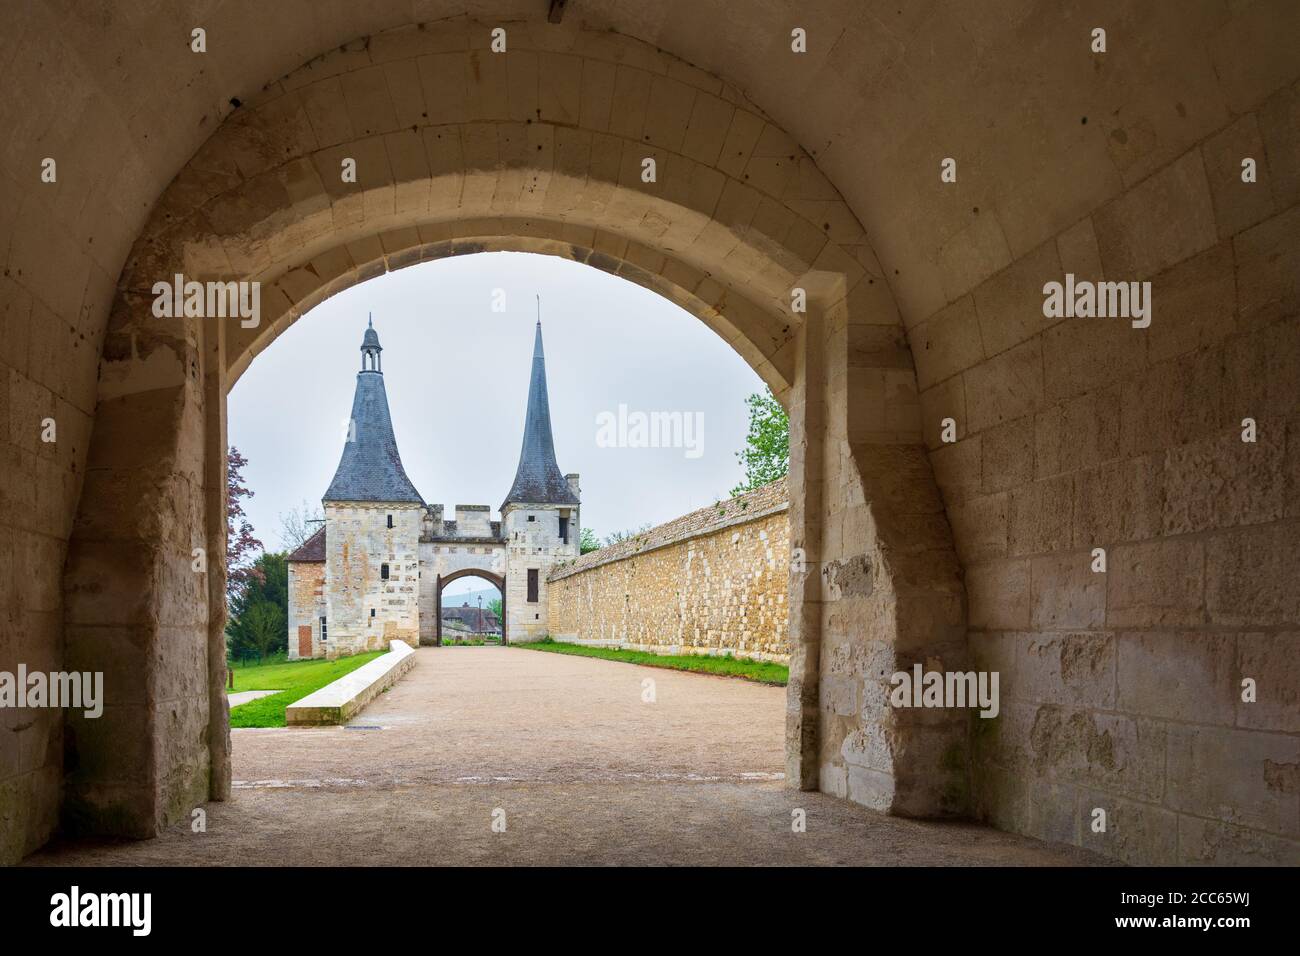 Türme, Mauern und Befestigungsanlagen des Haupteingangs zur katholischen Abtei von Bec Hellouin, Normandie, Frankreich. Stockfoto